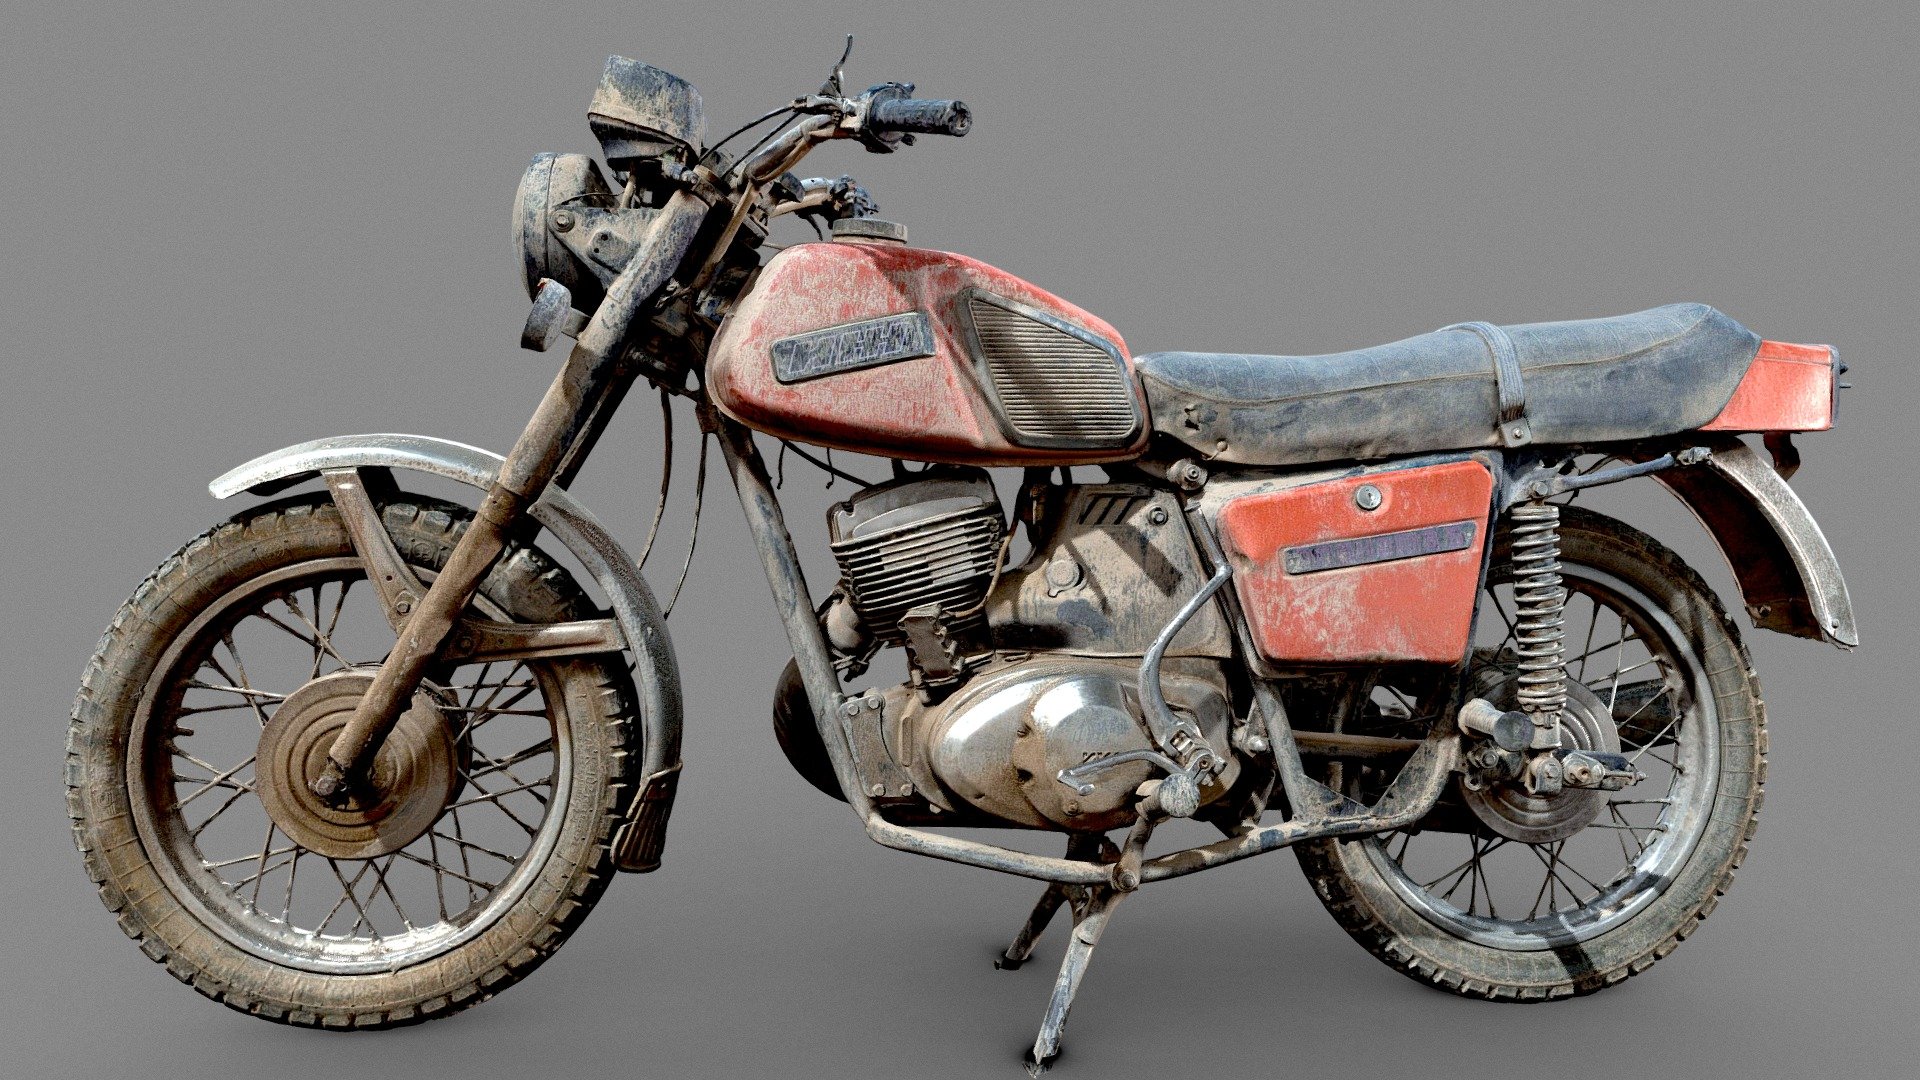 Russian motorcycle 3Dscan